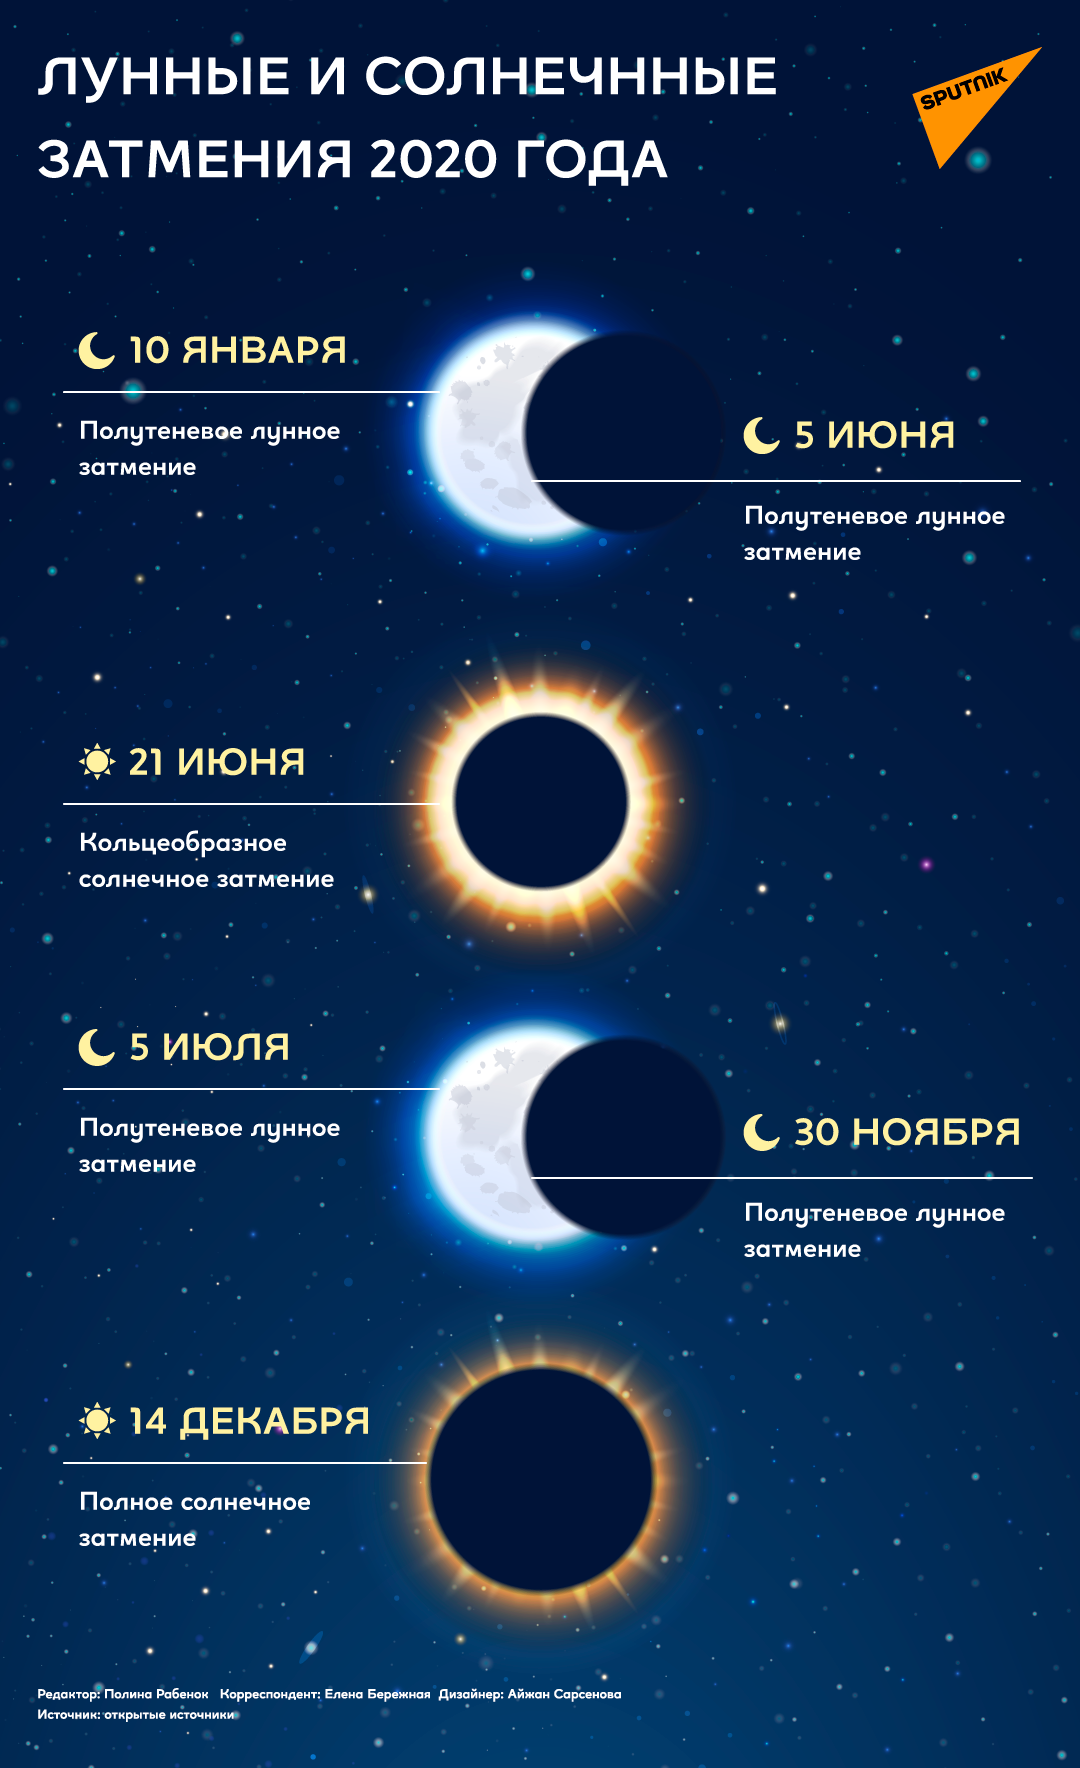 Инфографика: солнечные и лунные затмения - Sputnik Казахстан